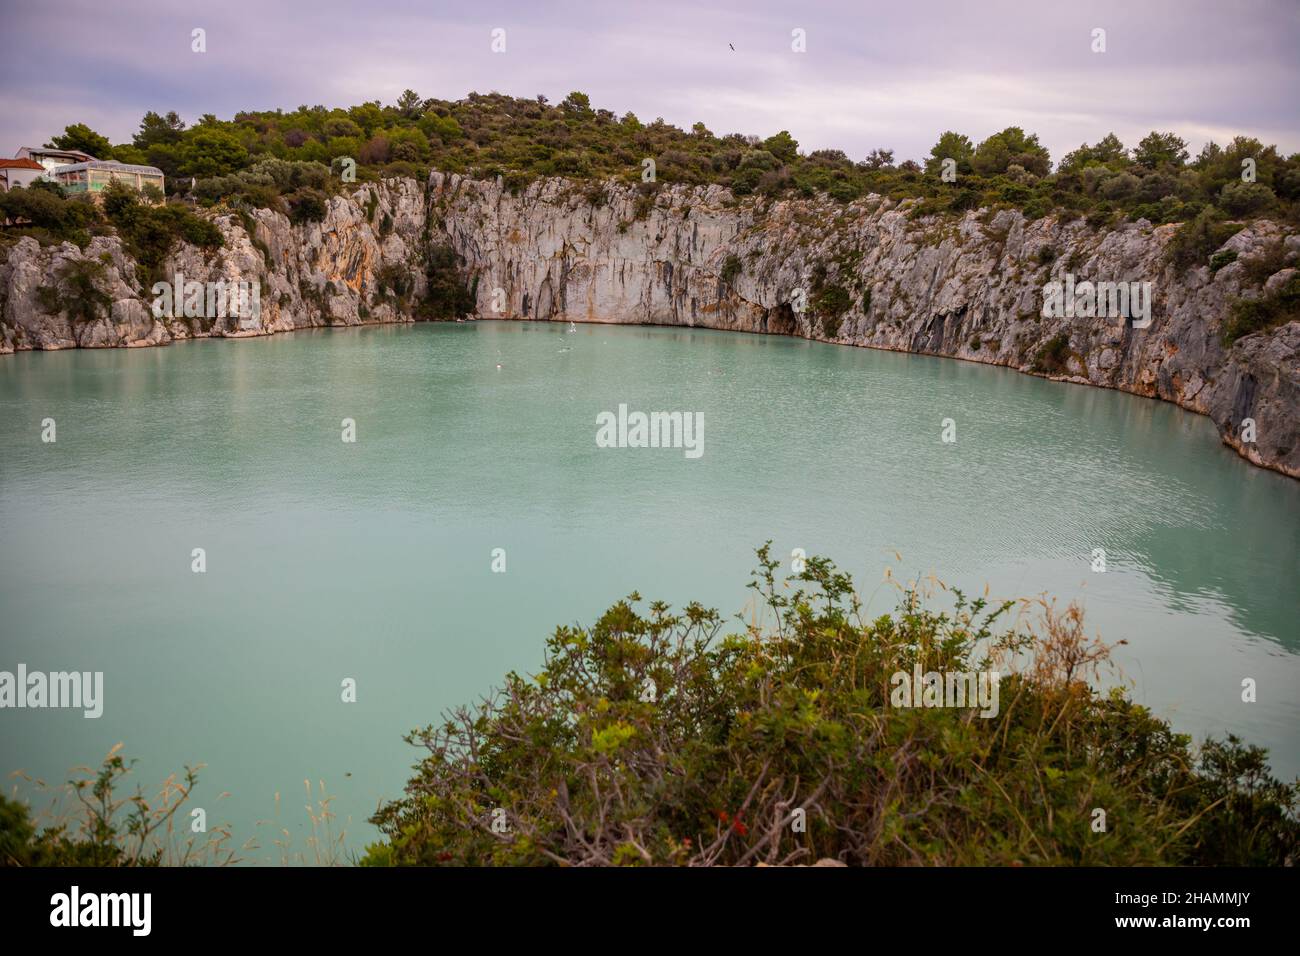 Zmajevo Oko oder Drachenauge See und blaue Lagune in der Nähe von  Rogoznica, Kroatien Stockfotografie - Alamy